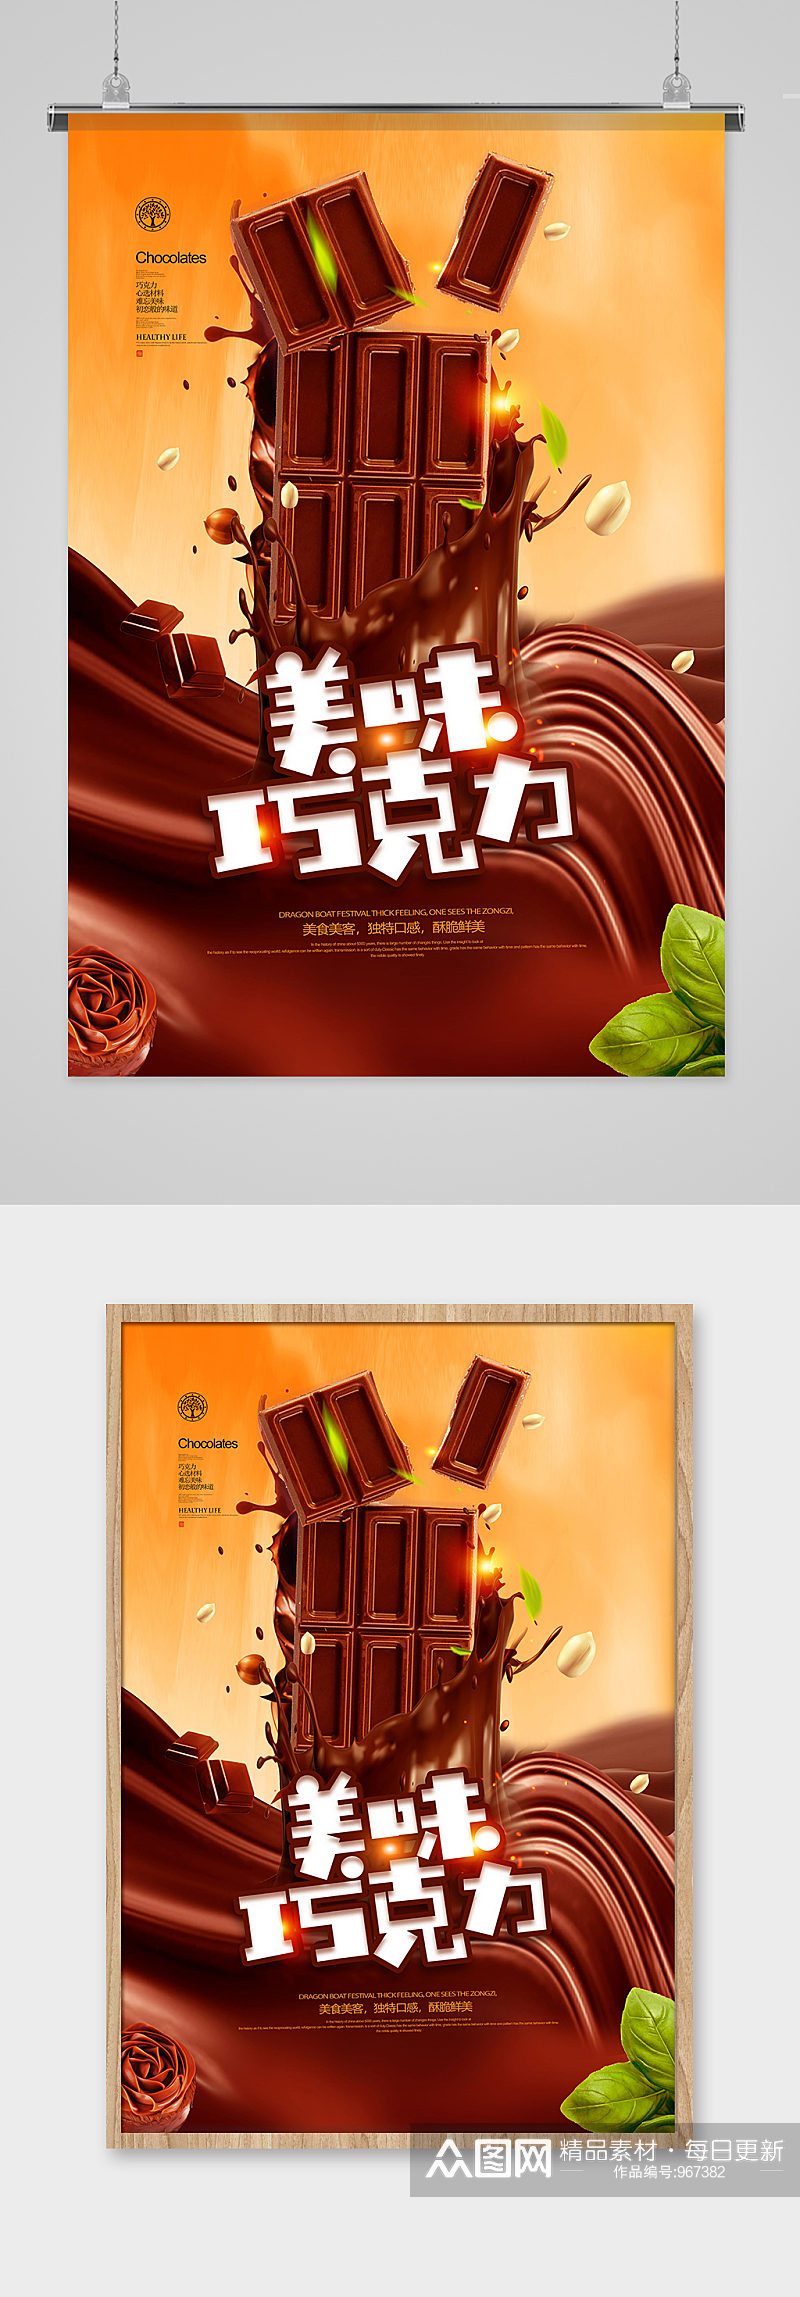 创意大气美味巧克力零食海报设计素材